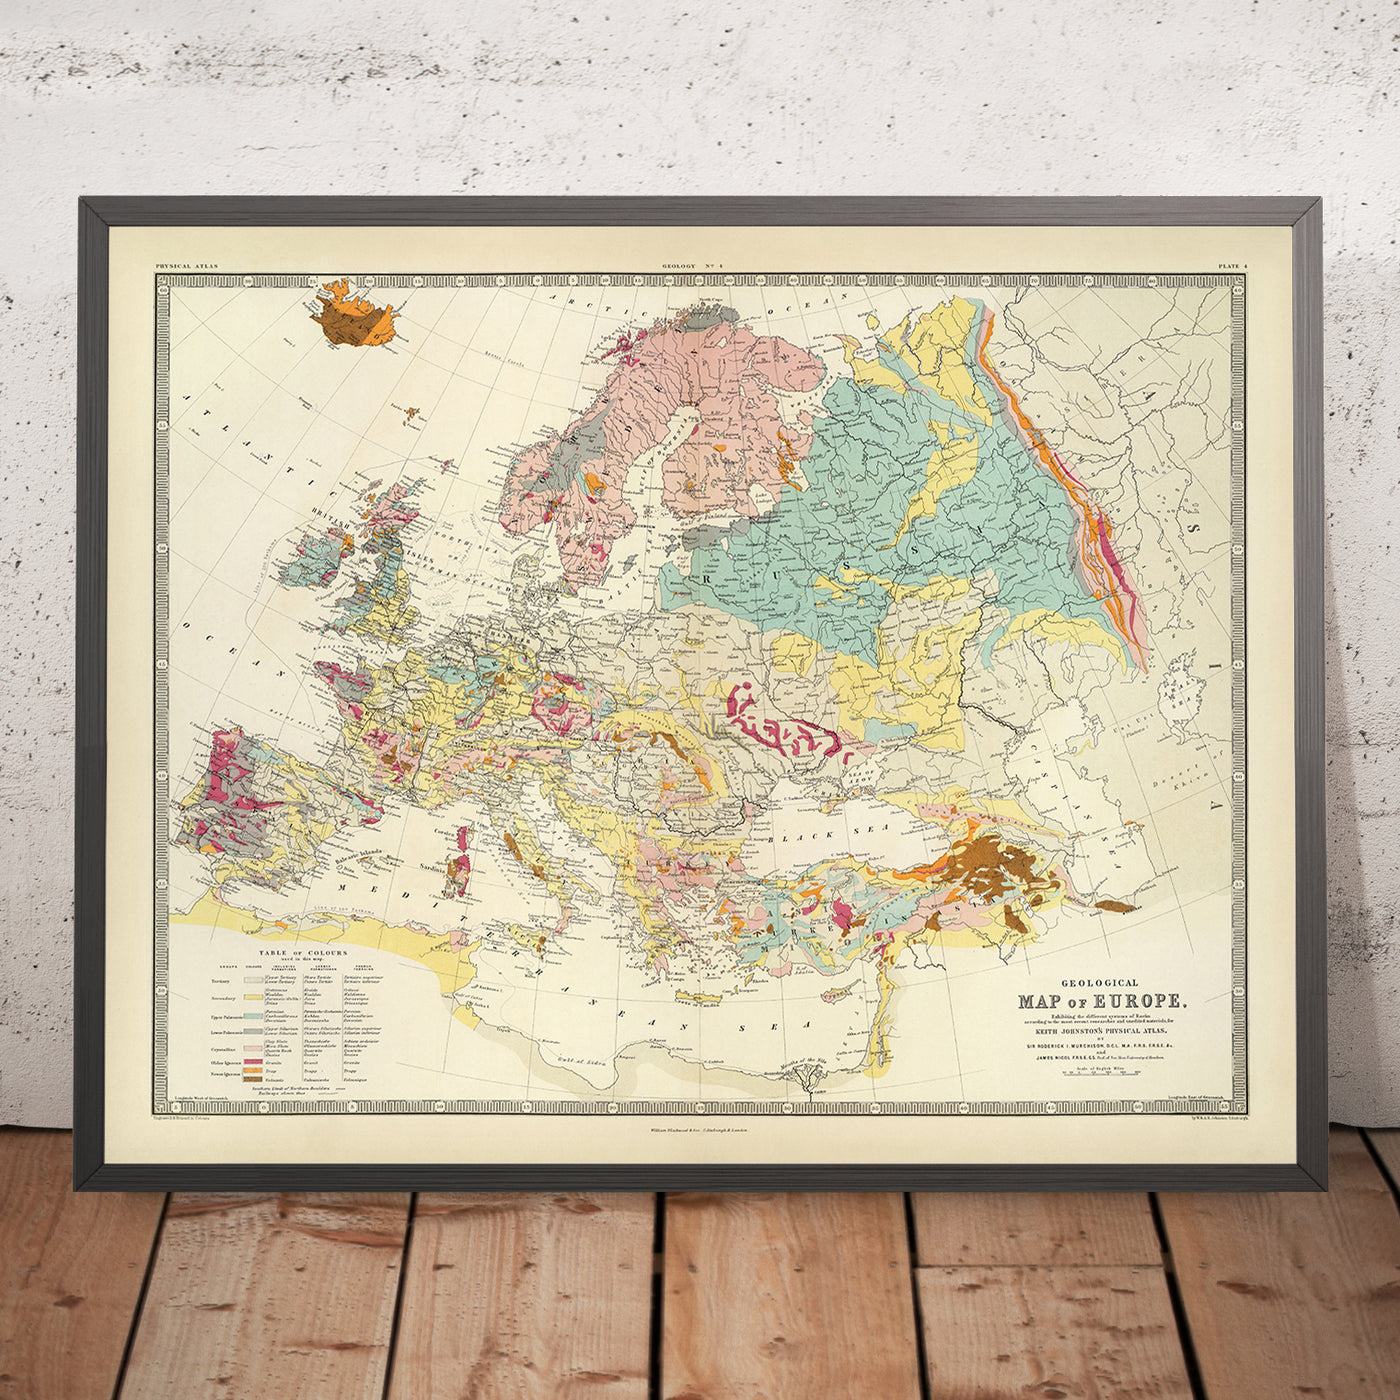 Ancienne carte géologique de l'Europe par AK Johnston, 1856 : carte géologique des montagnes, des roches et des strates